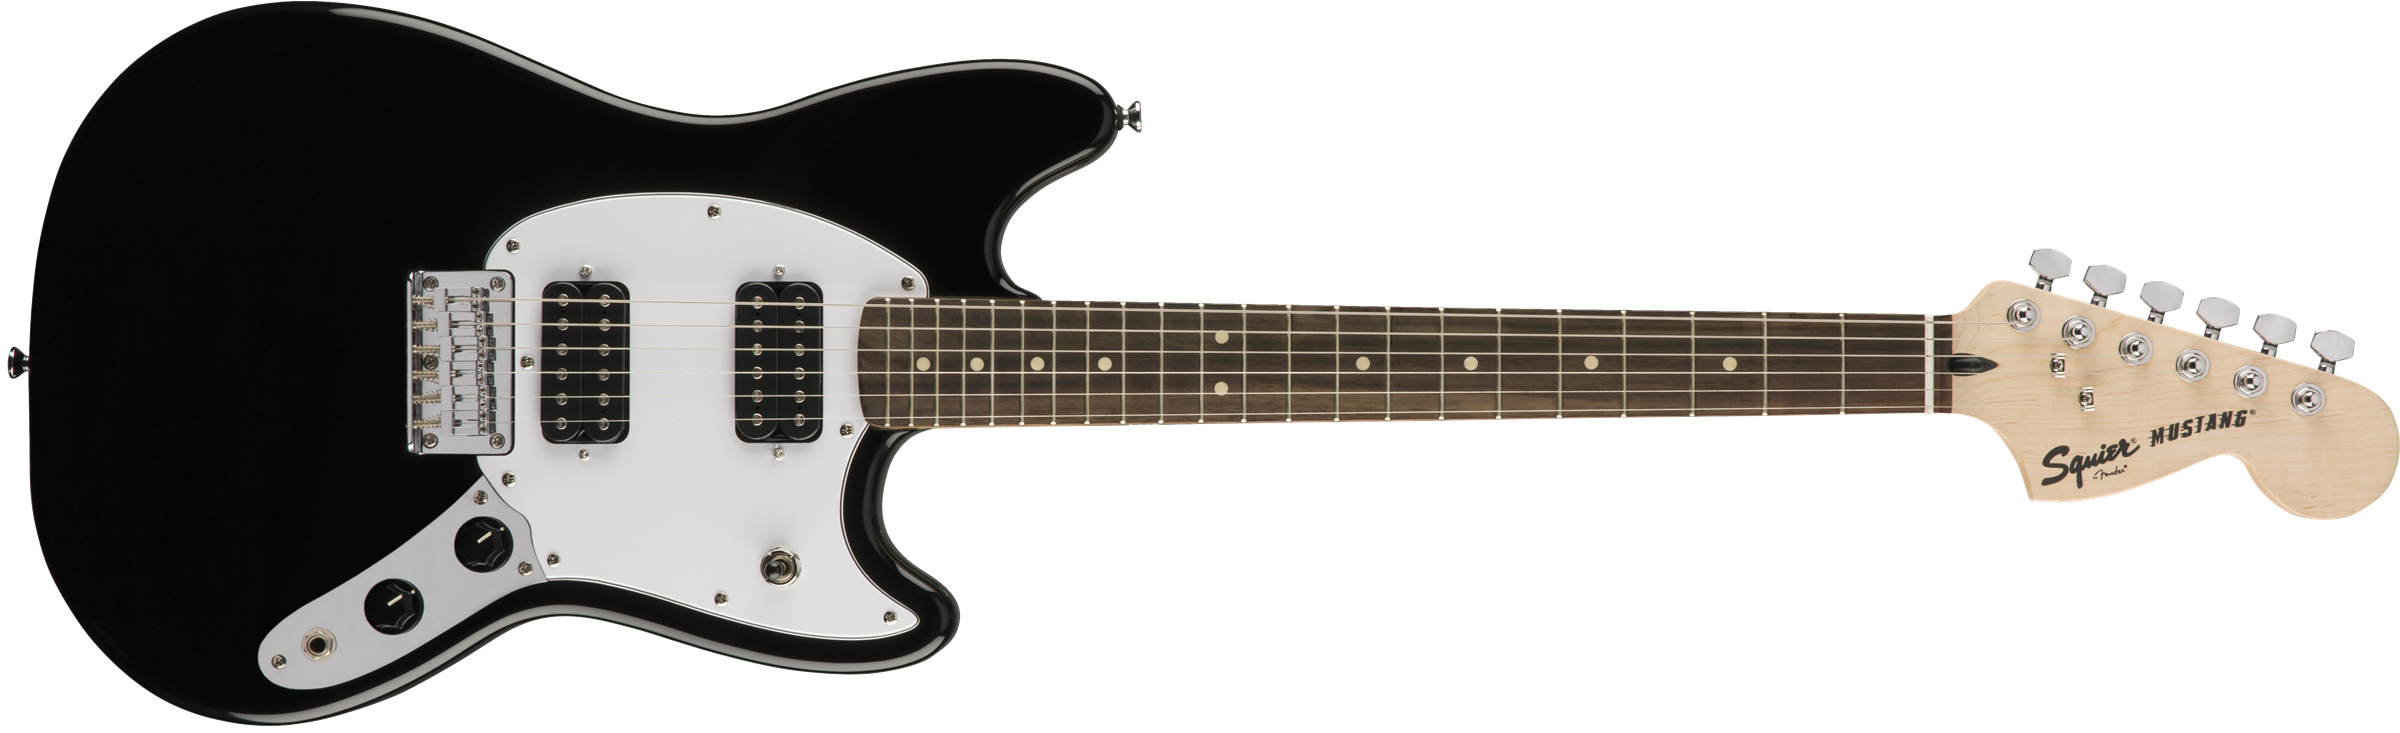 Squier Mustang Bullet Hh 2019 Ht Lau - Black - Retro-rock elektrische gitaar - Variation 1